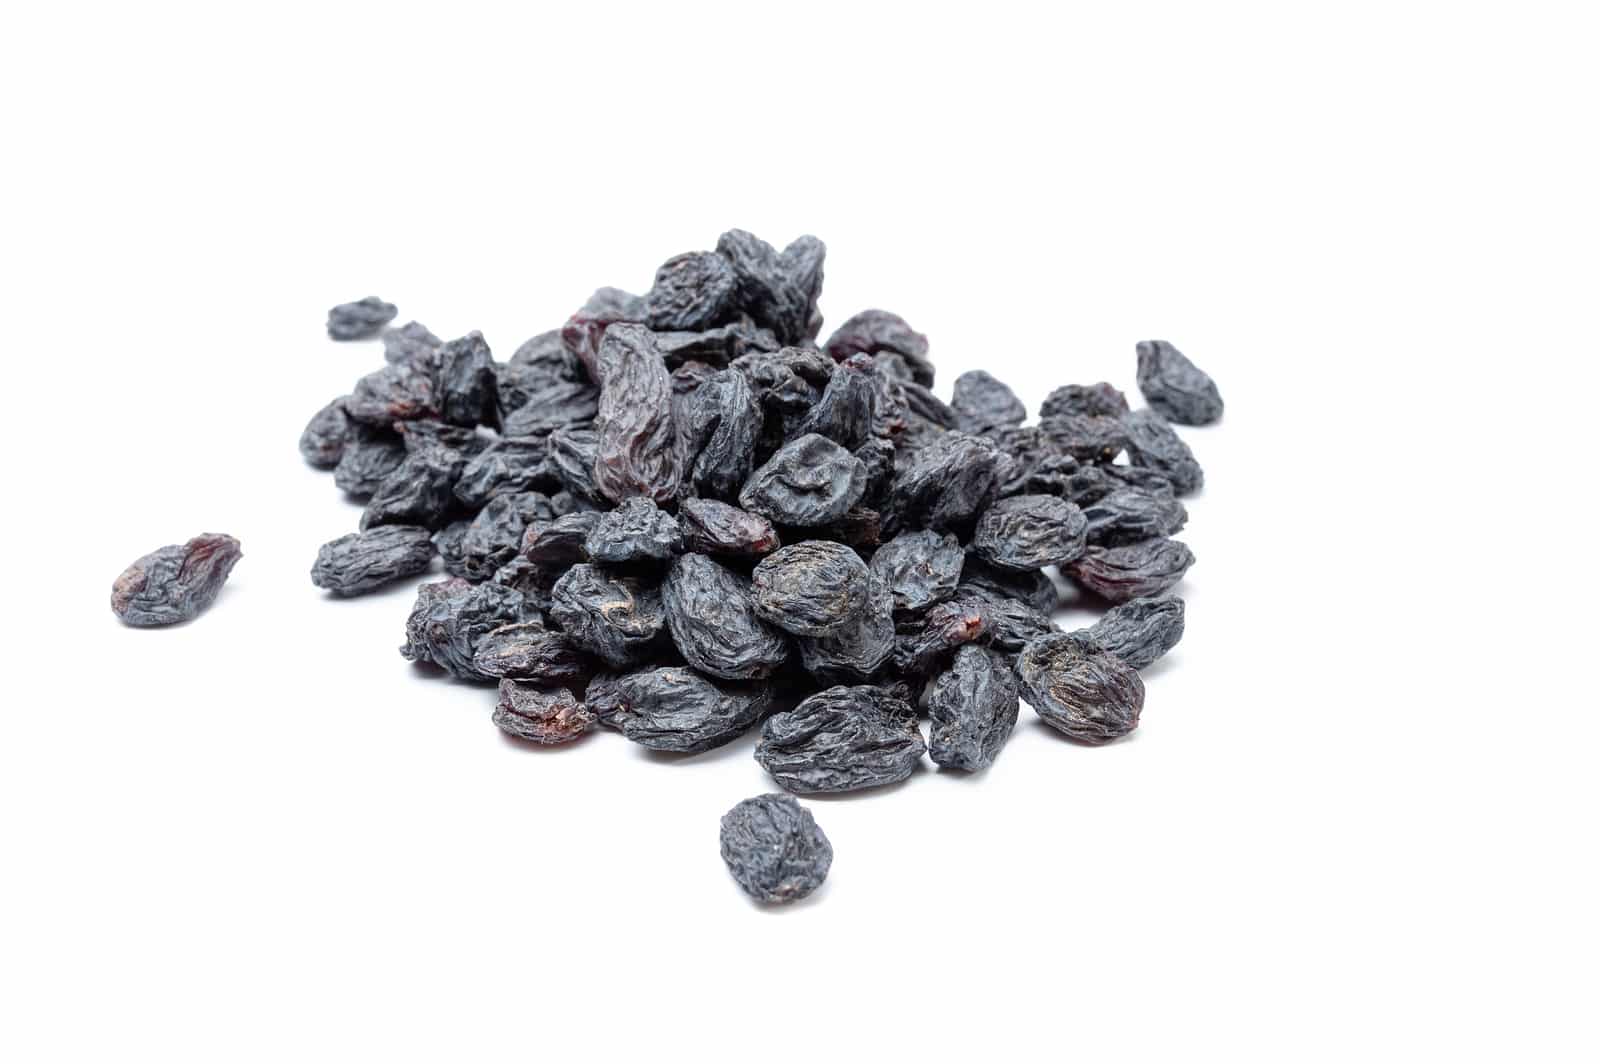 Raisins made of dark grapes. Shadow raisins.